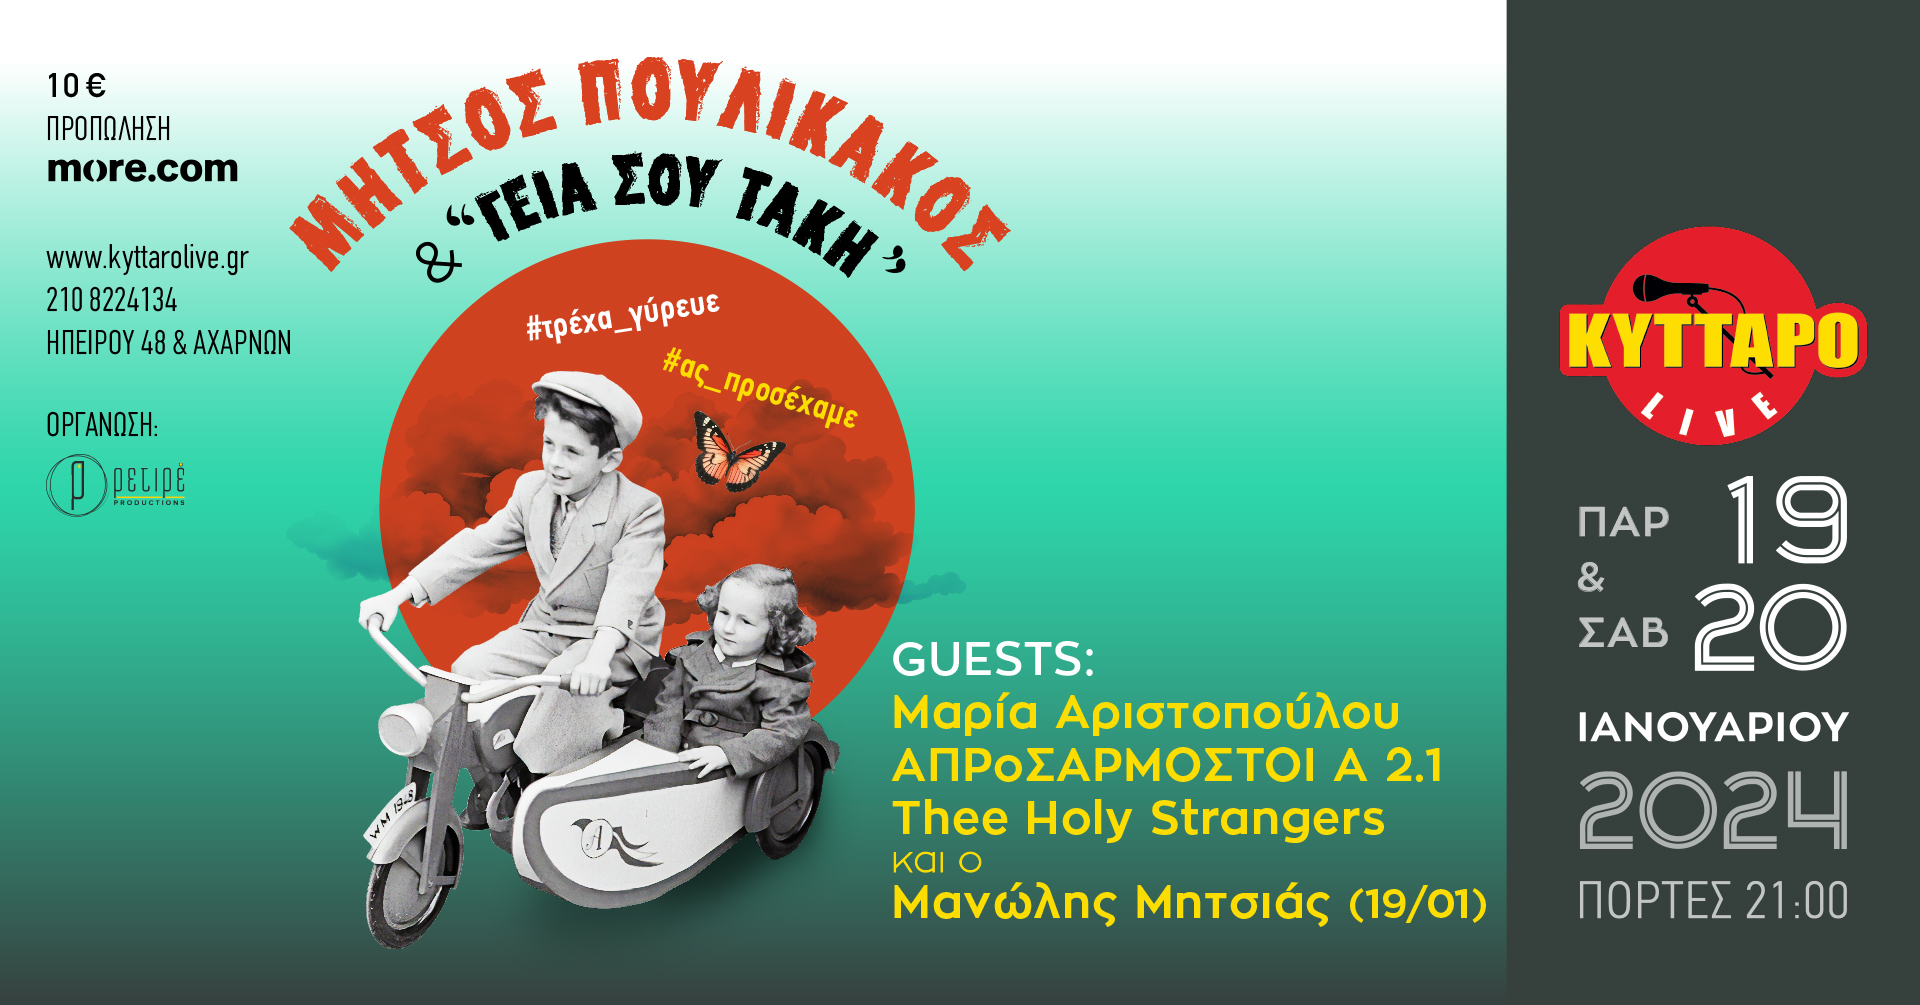 Μήτσος Πουλικάκος και οι «Γεια σου Τάκη» &amp; SPECIAL GUESTS Μαρία Αριστοπούλου, ΑΠΡοΣΑΡΜΟΣΤΟΙ Α 2.1, The Holy Strangers, και ο Μανώλης Μητσιάς (19/1)